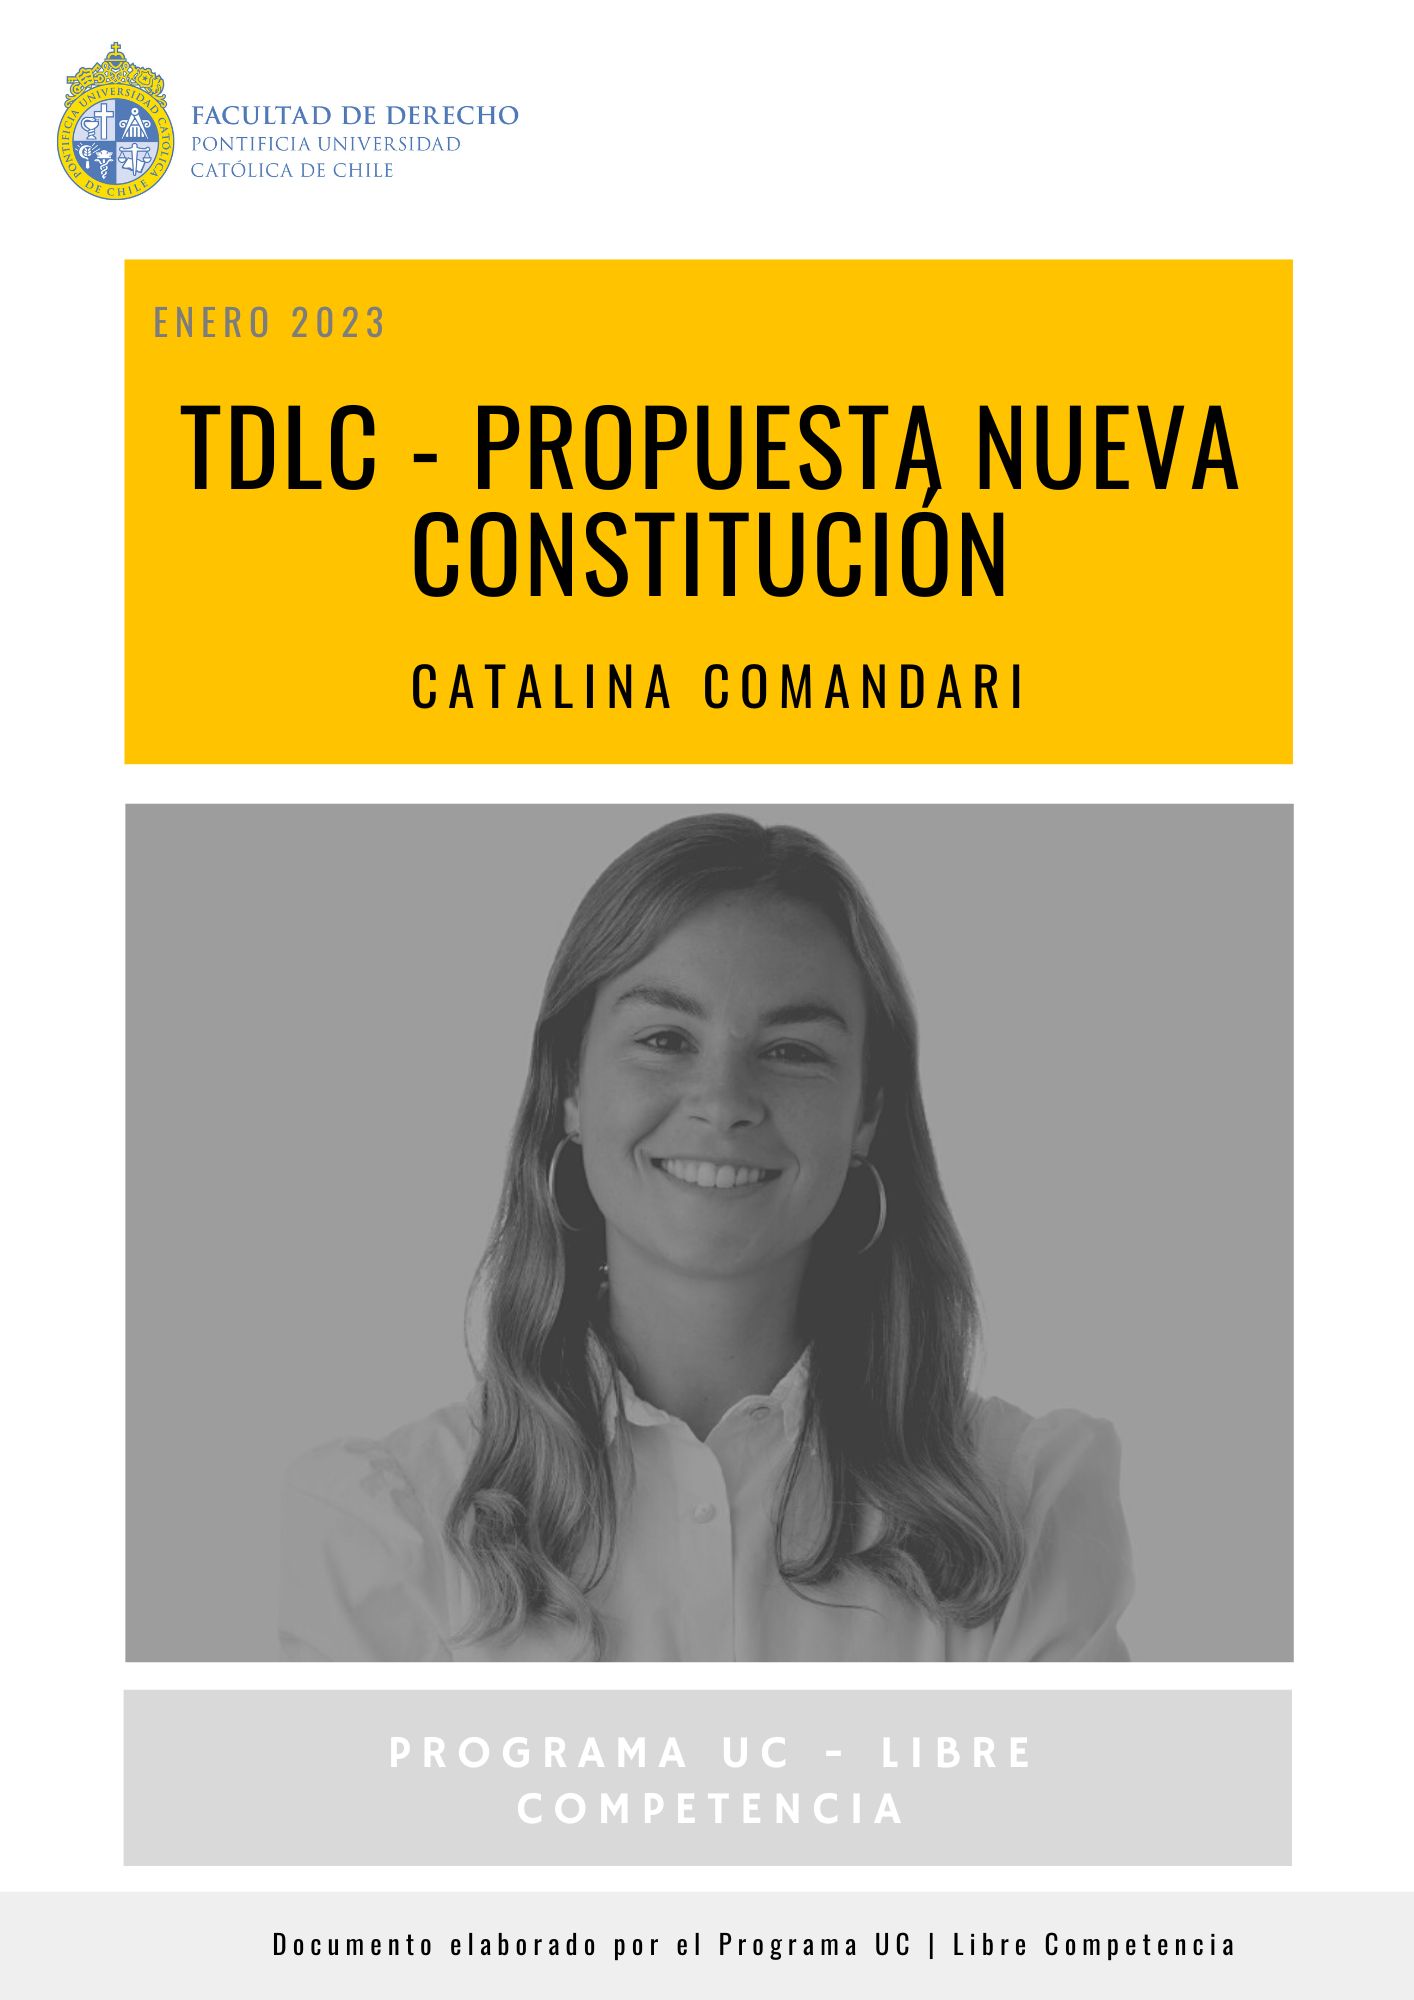 TDLC y Propuesta Nueva Constitución